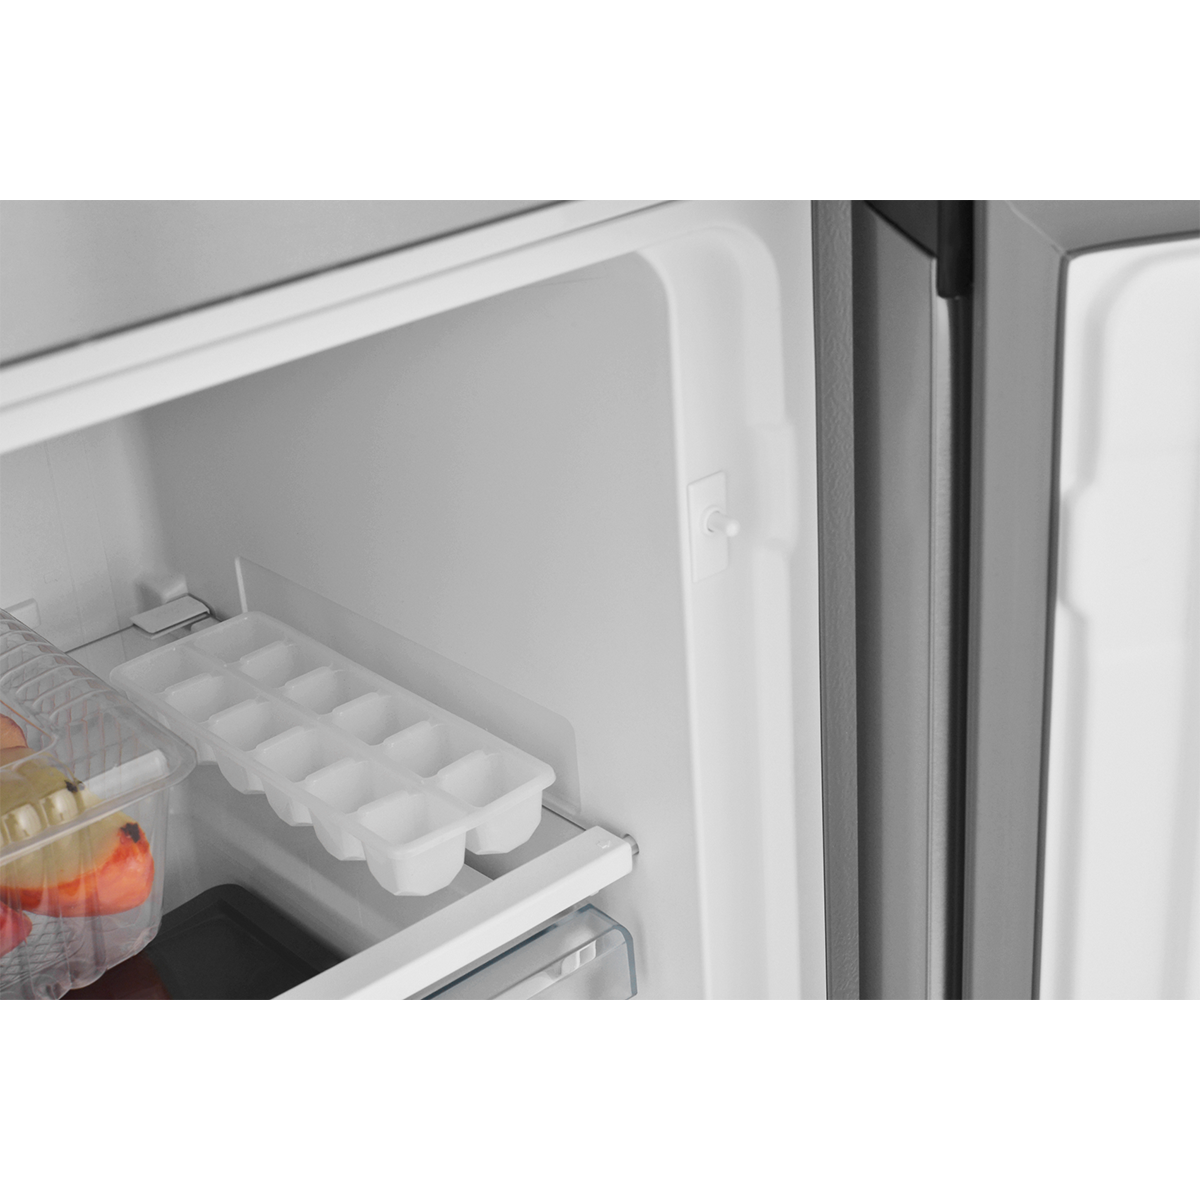 картинка Холодильник Cross Door ZUGEL ZRCD430X, нерж. сталь